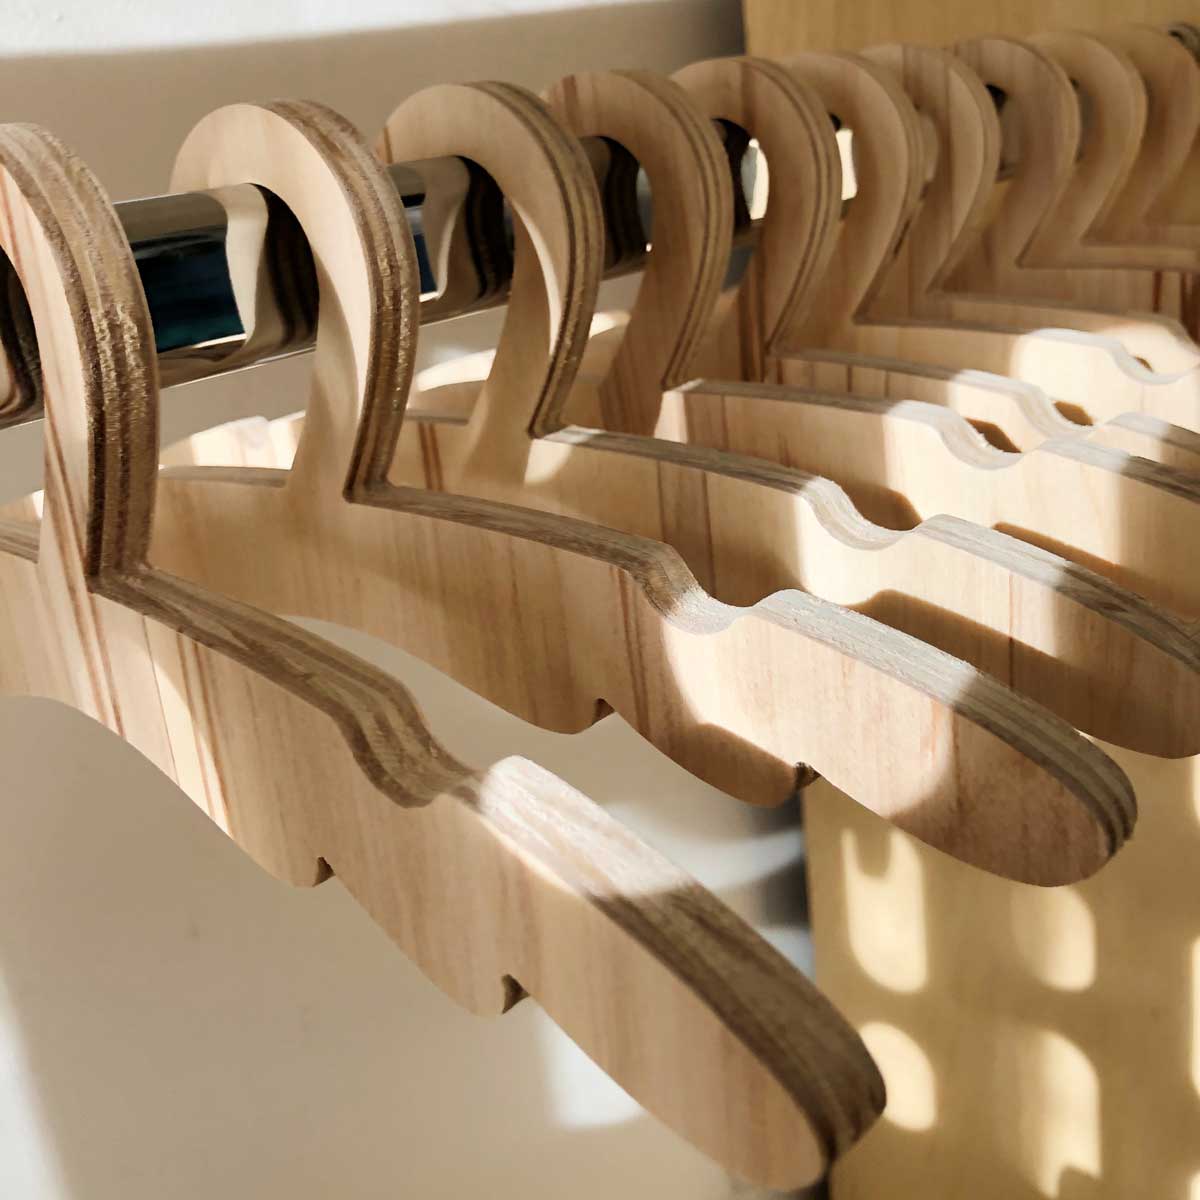 Cereal tinta demasiado Perchas de madera – IRQICHAY - Muebles inspirados en Pedagogía Montessori